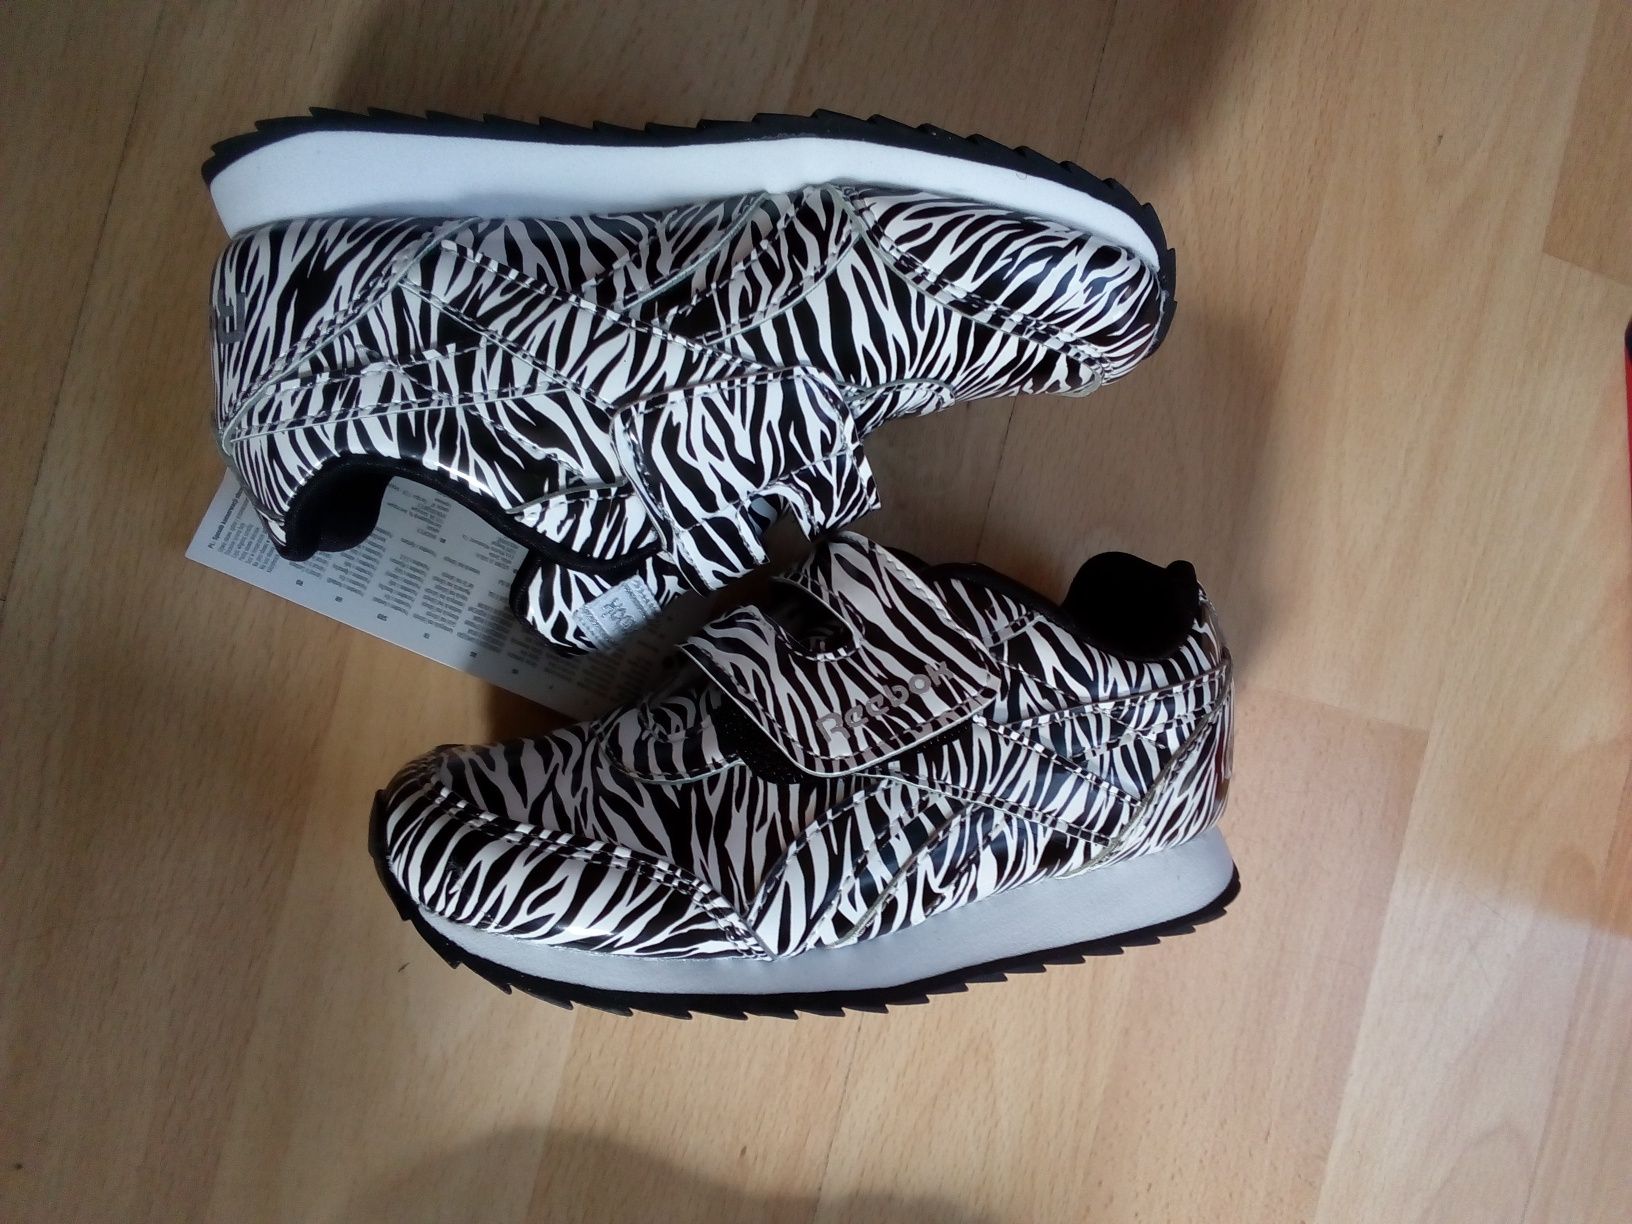 Nowe buty reebok 25,5, wkładka 16,5 cm, zebra